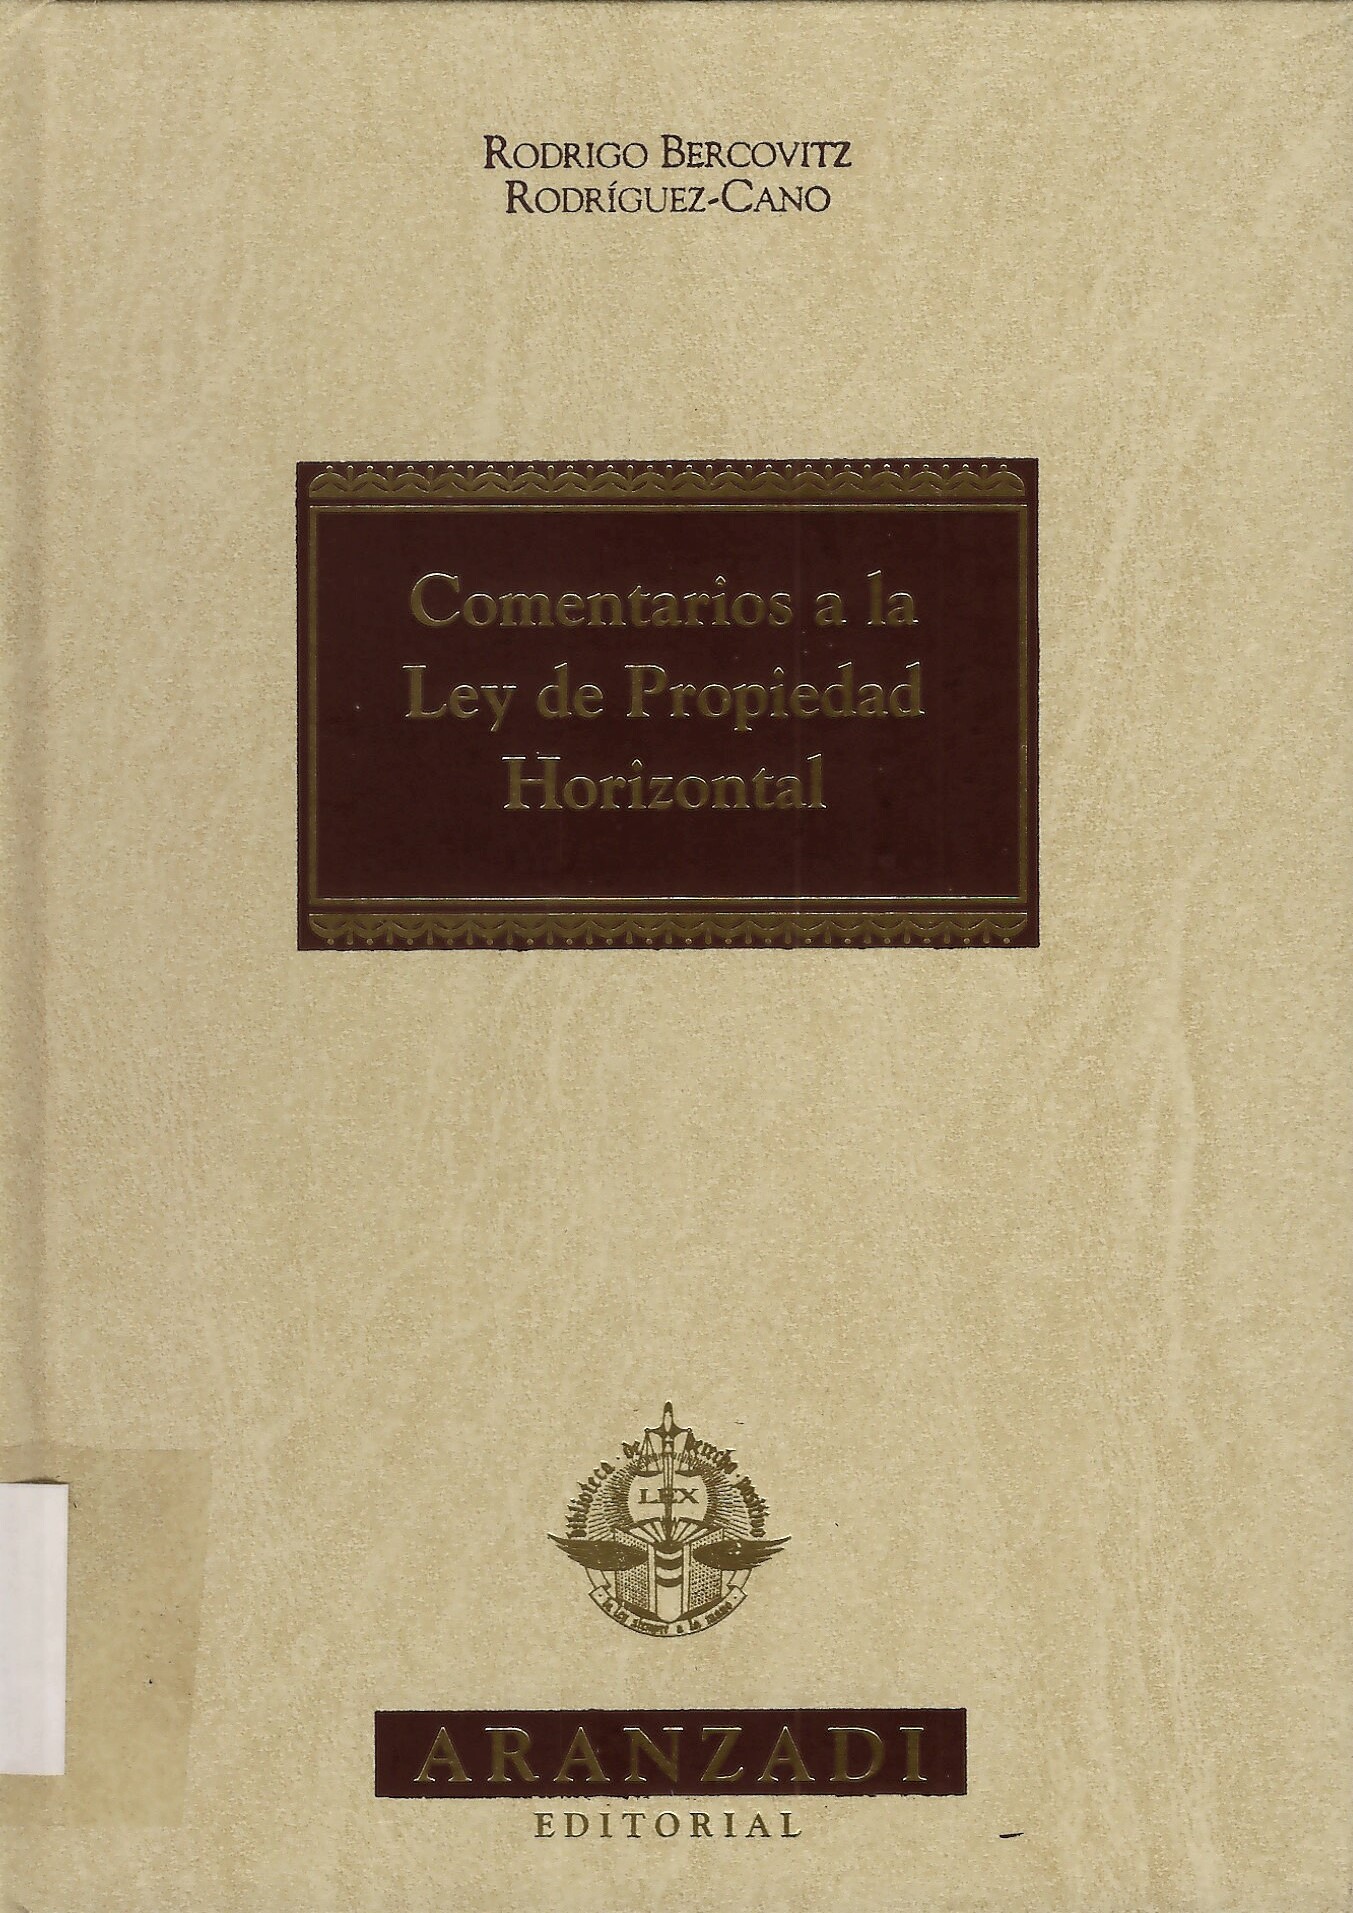 Imagen de portada del libro Comentarios a la Ley de Propiedad Horizontal